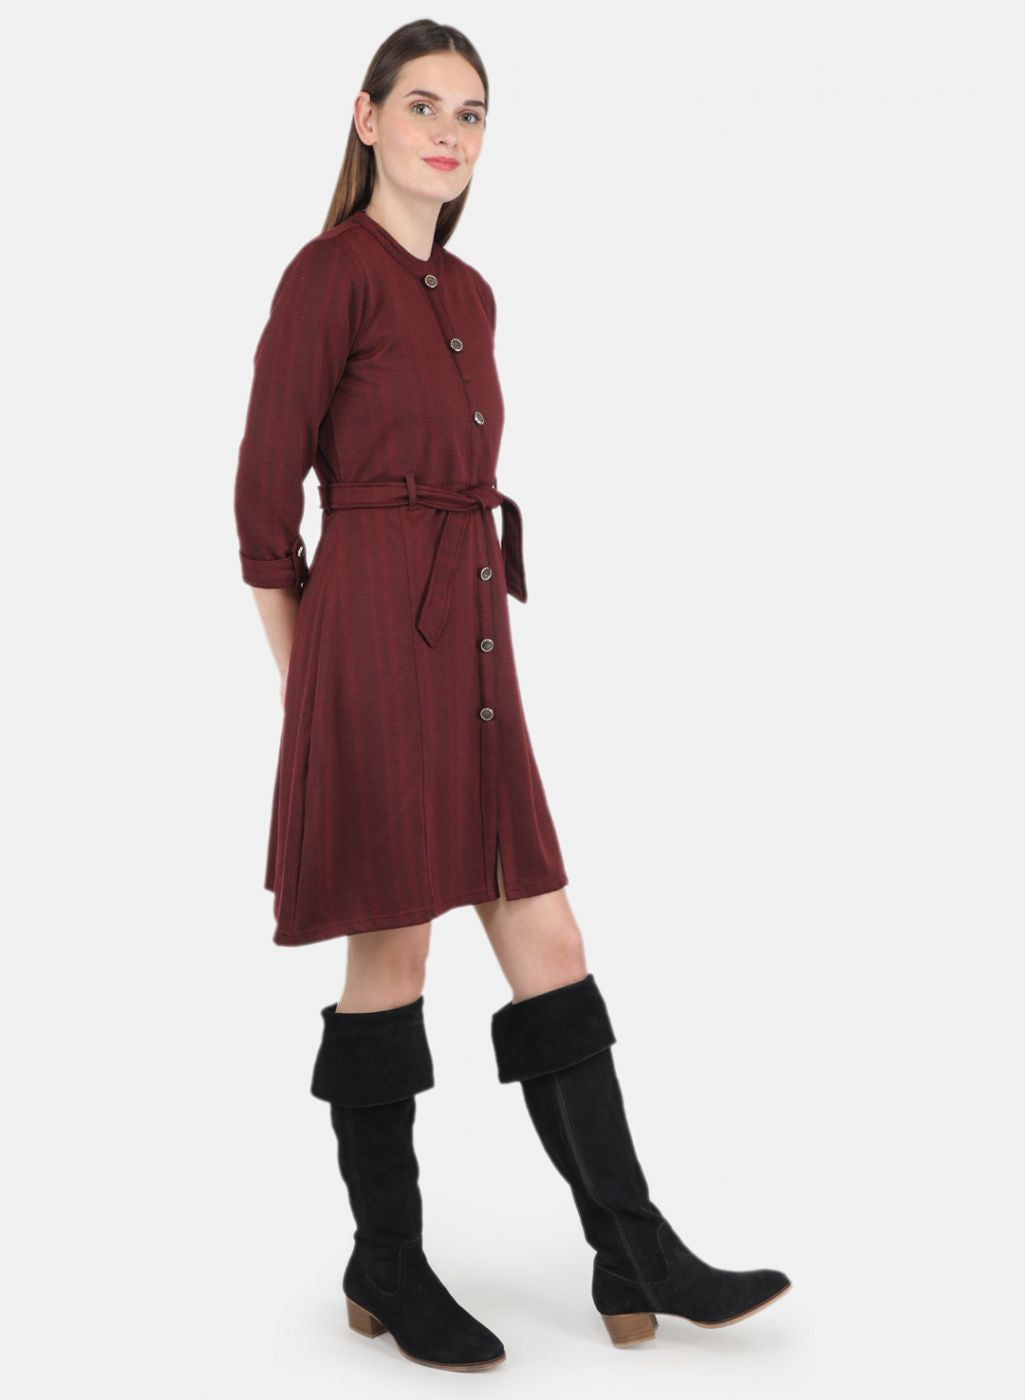 Cute Burgundy Dress - Shirt Dress - Belted Dress - $40.00 - Lulus